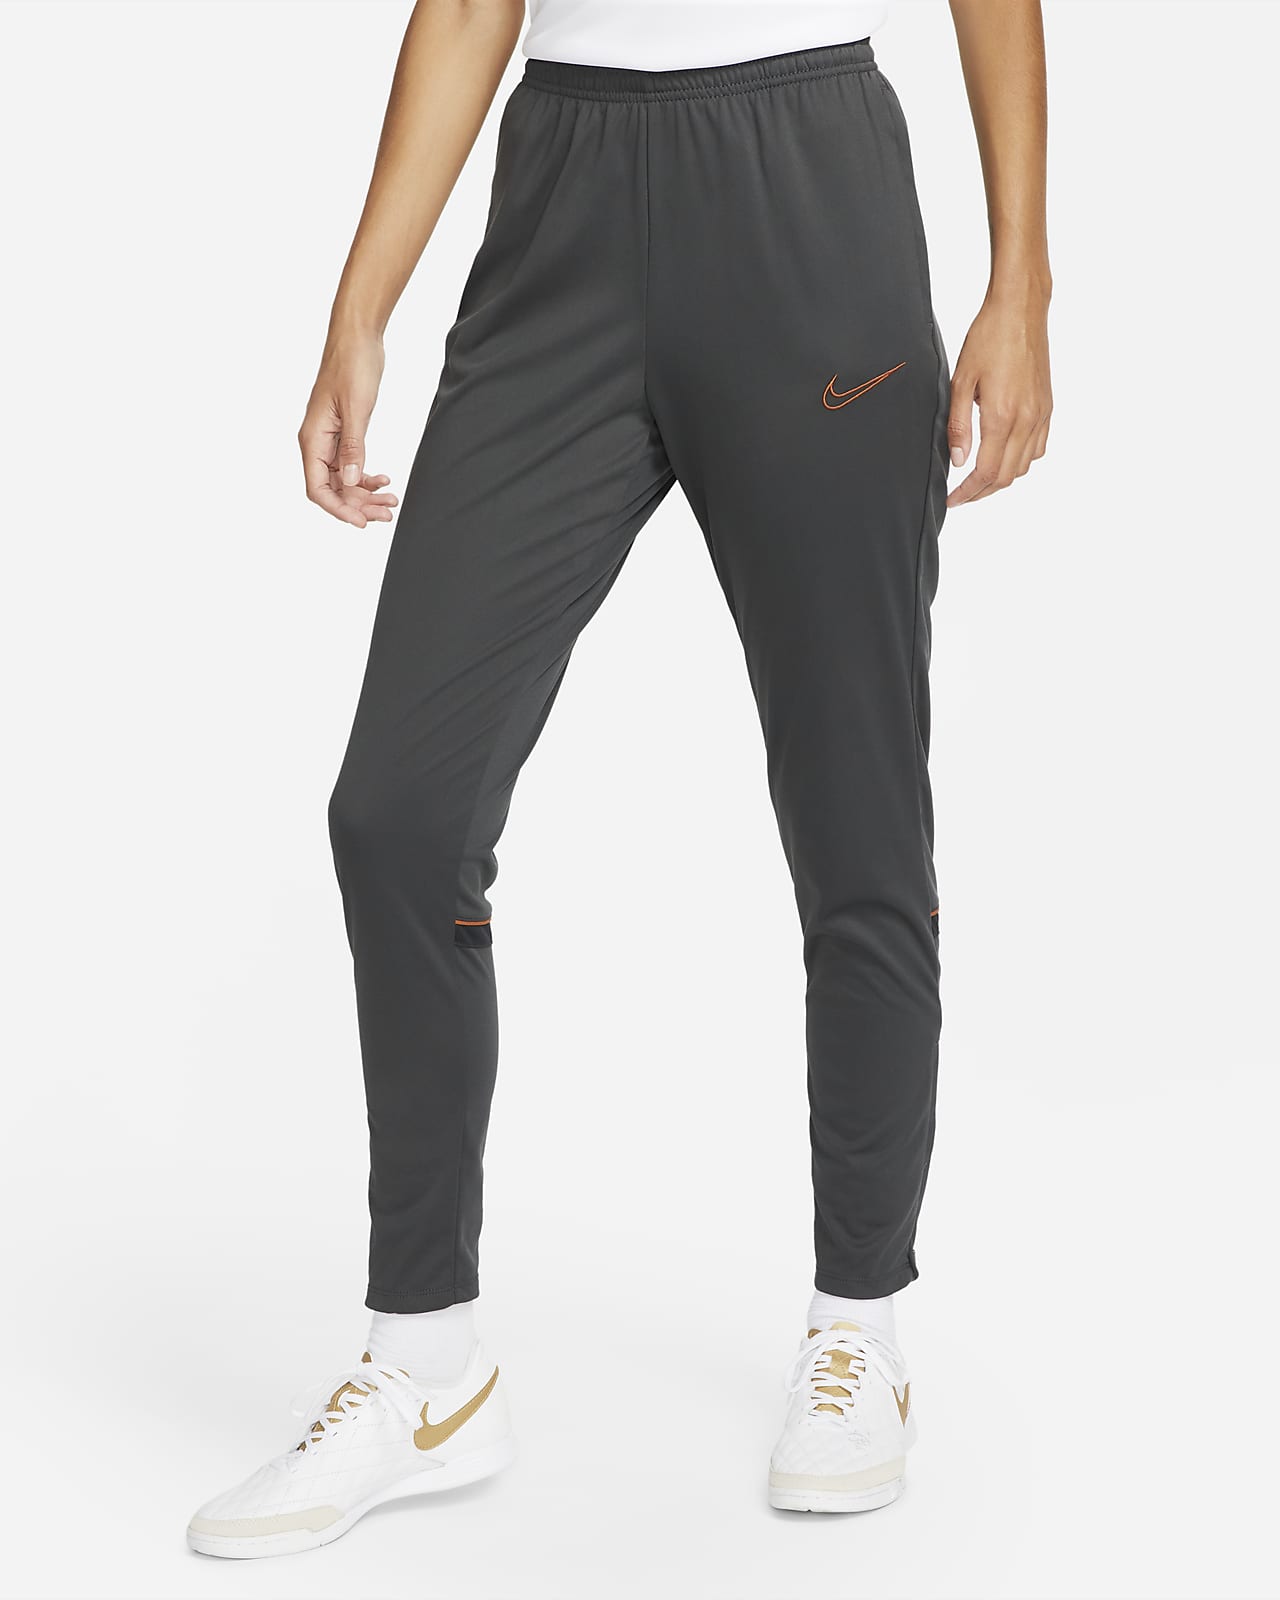 Pantaloni Nike Dri-FIT Academy – Donna